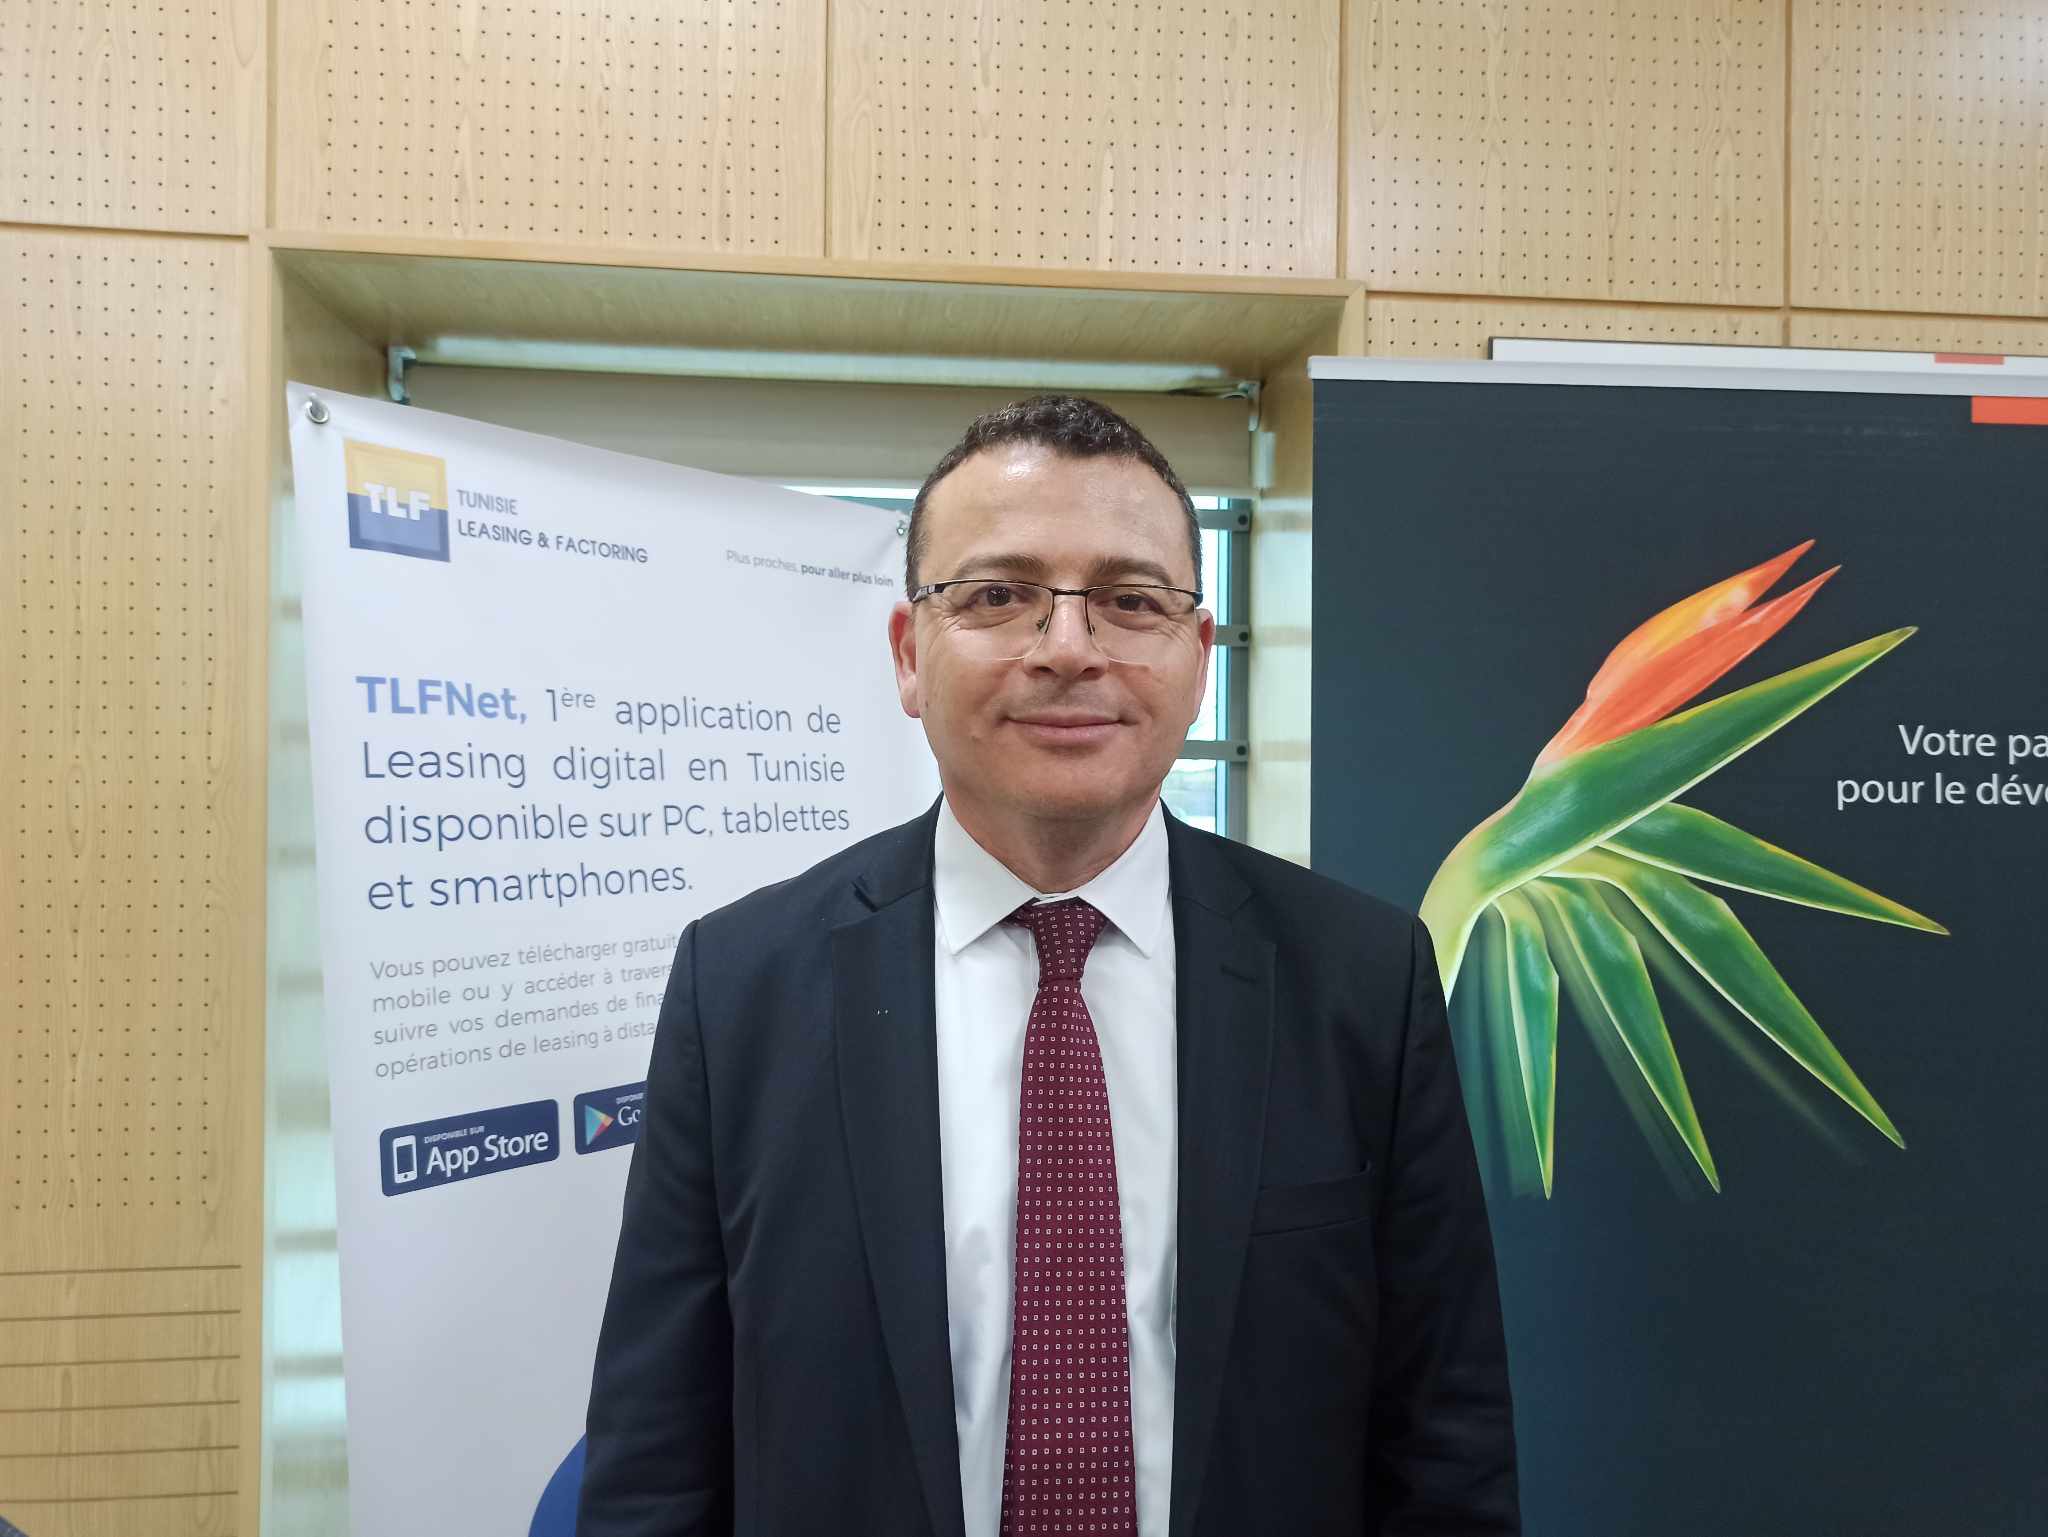 المدير العام للشركة التونسية للإيجار المالي والفكتورينق لـ"الصباح نيوز"   : رقم معاملاتنا في تونس ارتفع الى 340 مليون دينار